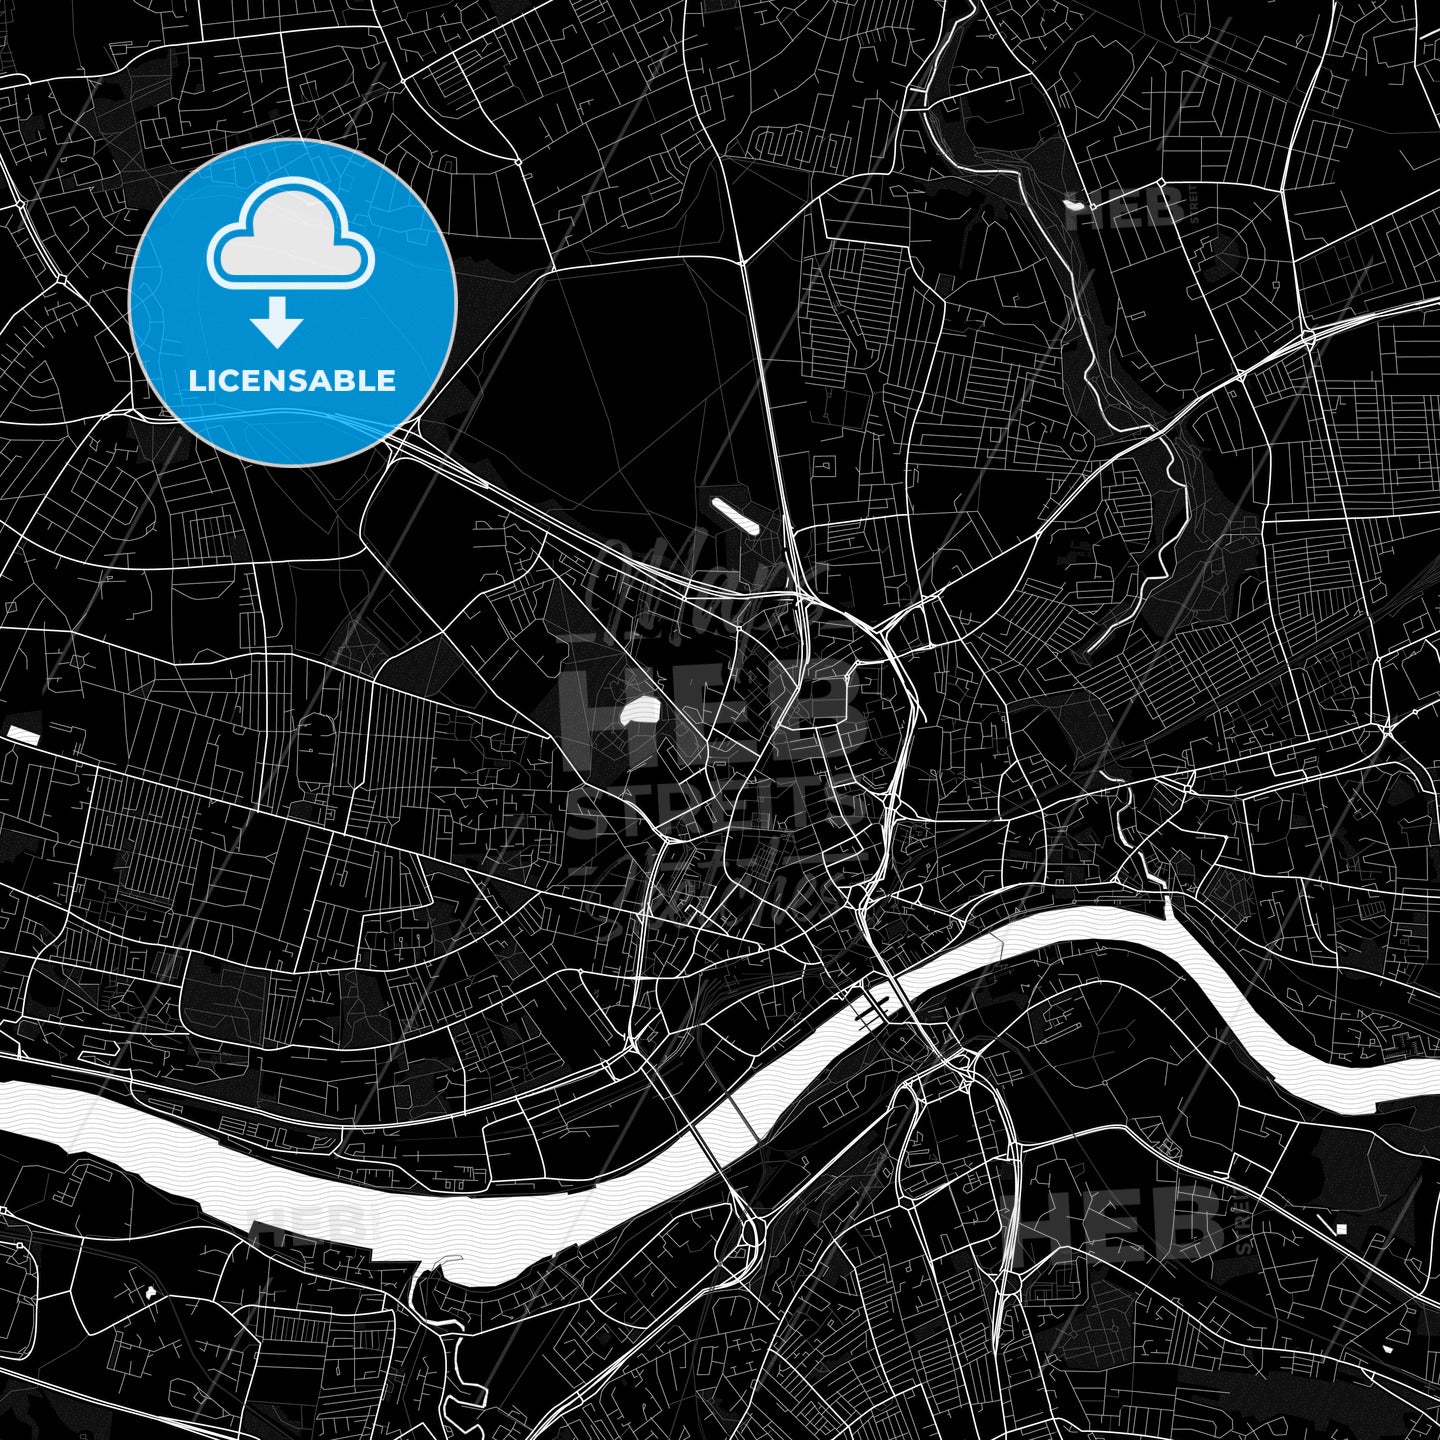 Newcastle upon Tyne, England PDF map